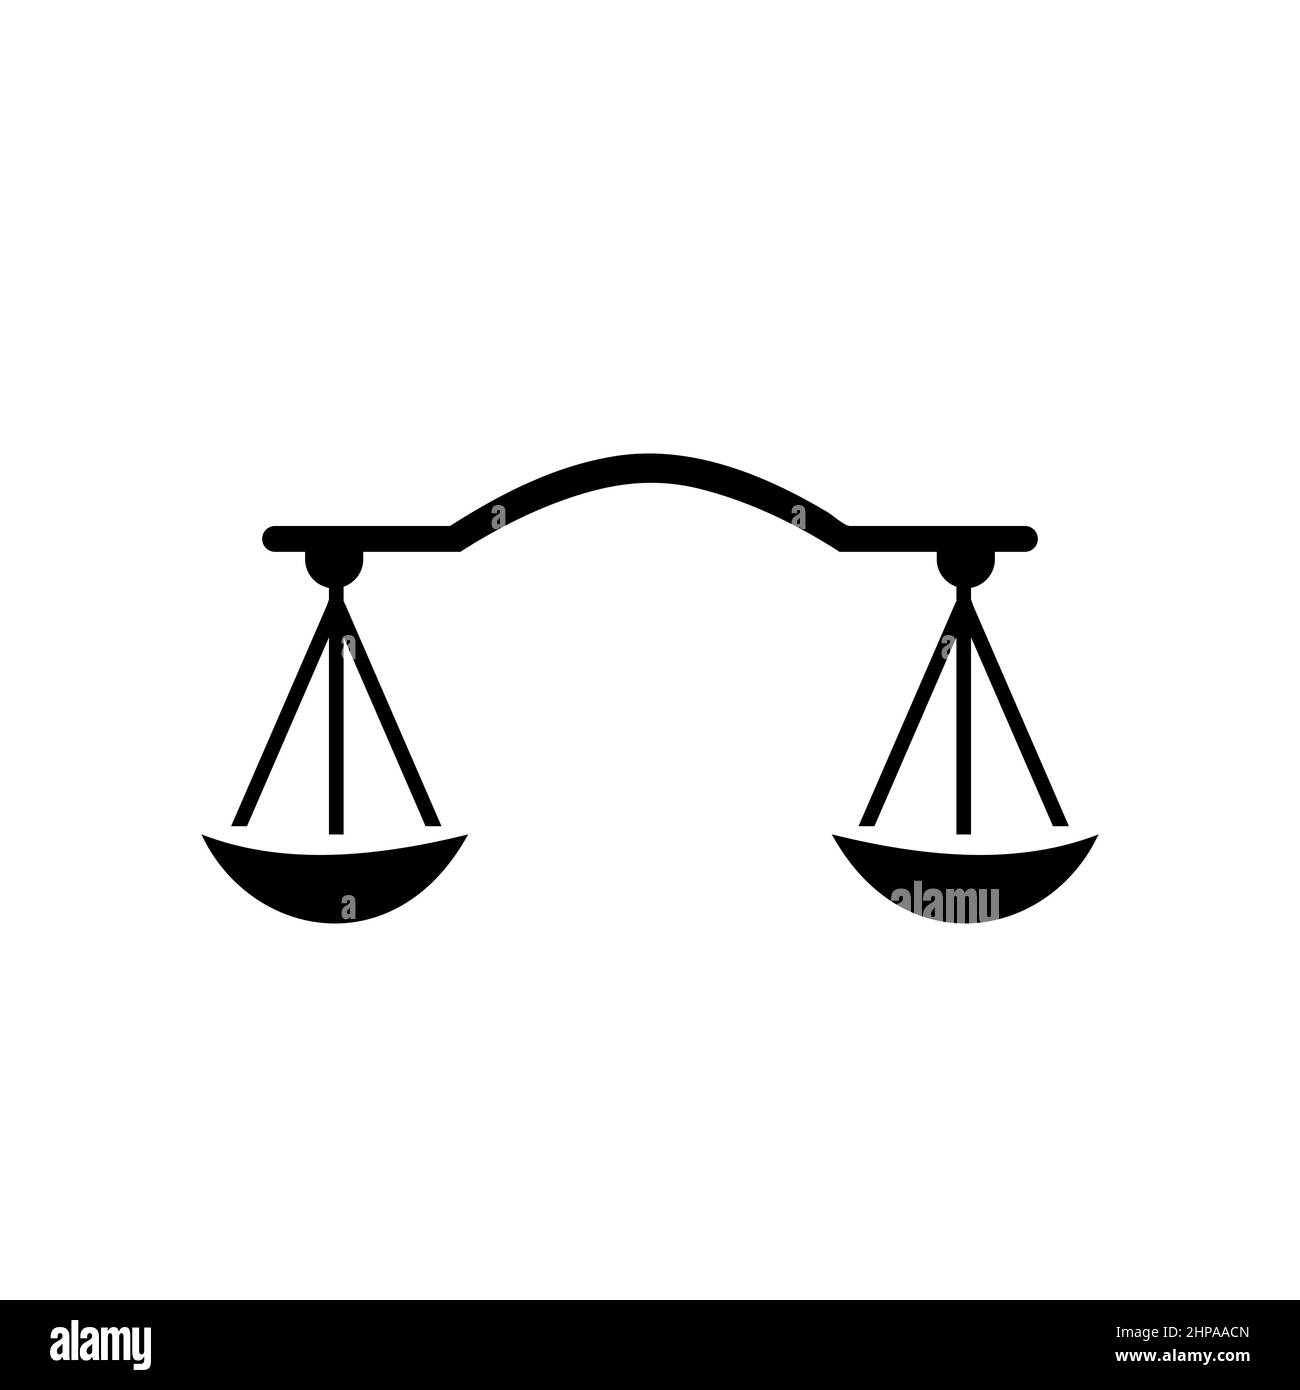 Studio legale Logo Design. Avvocato, Giustizia, avvocato, legale, avvocato, Ufficio legale, Scale. Logo della legge Illustrazione Vettoriale